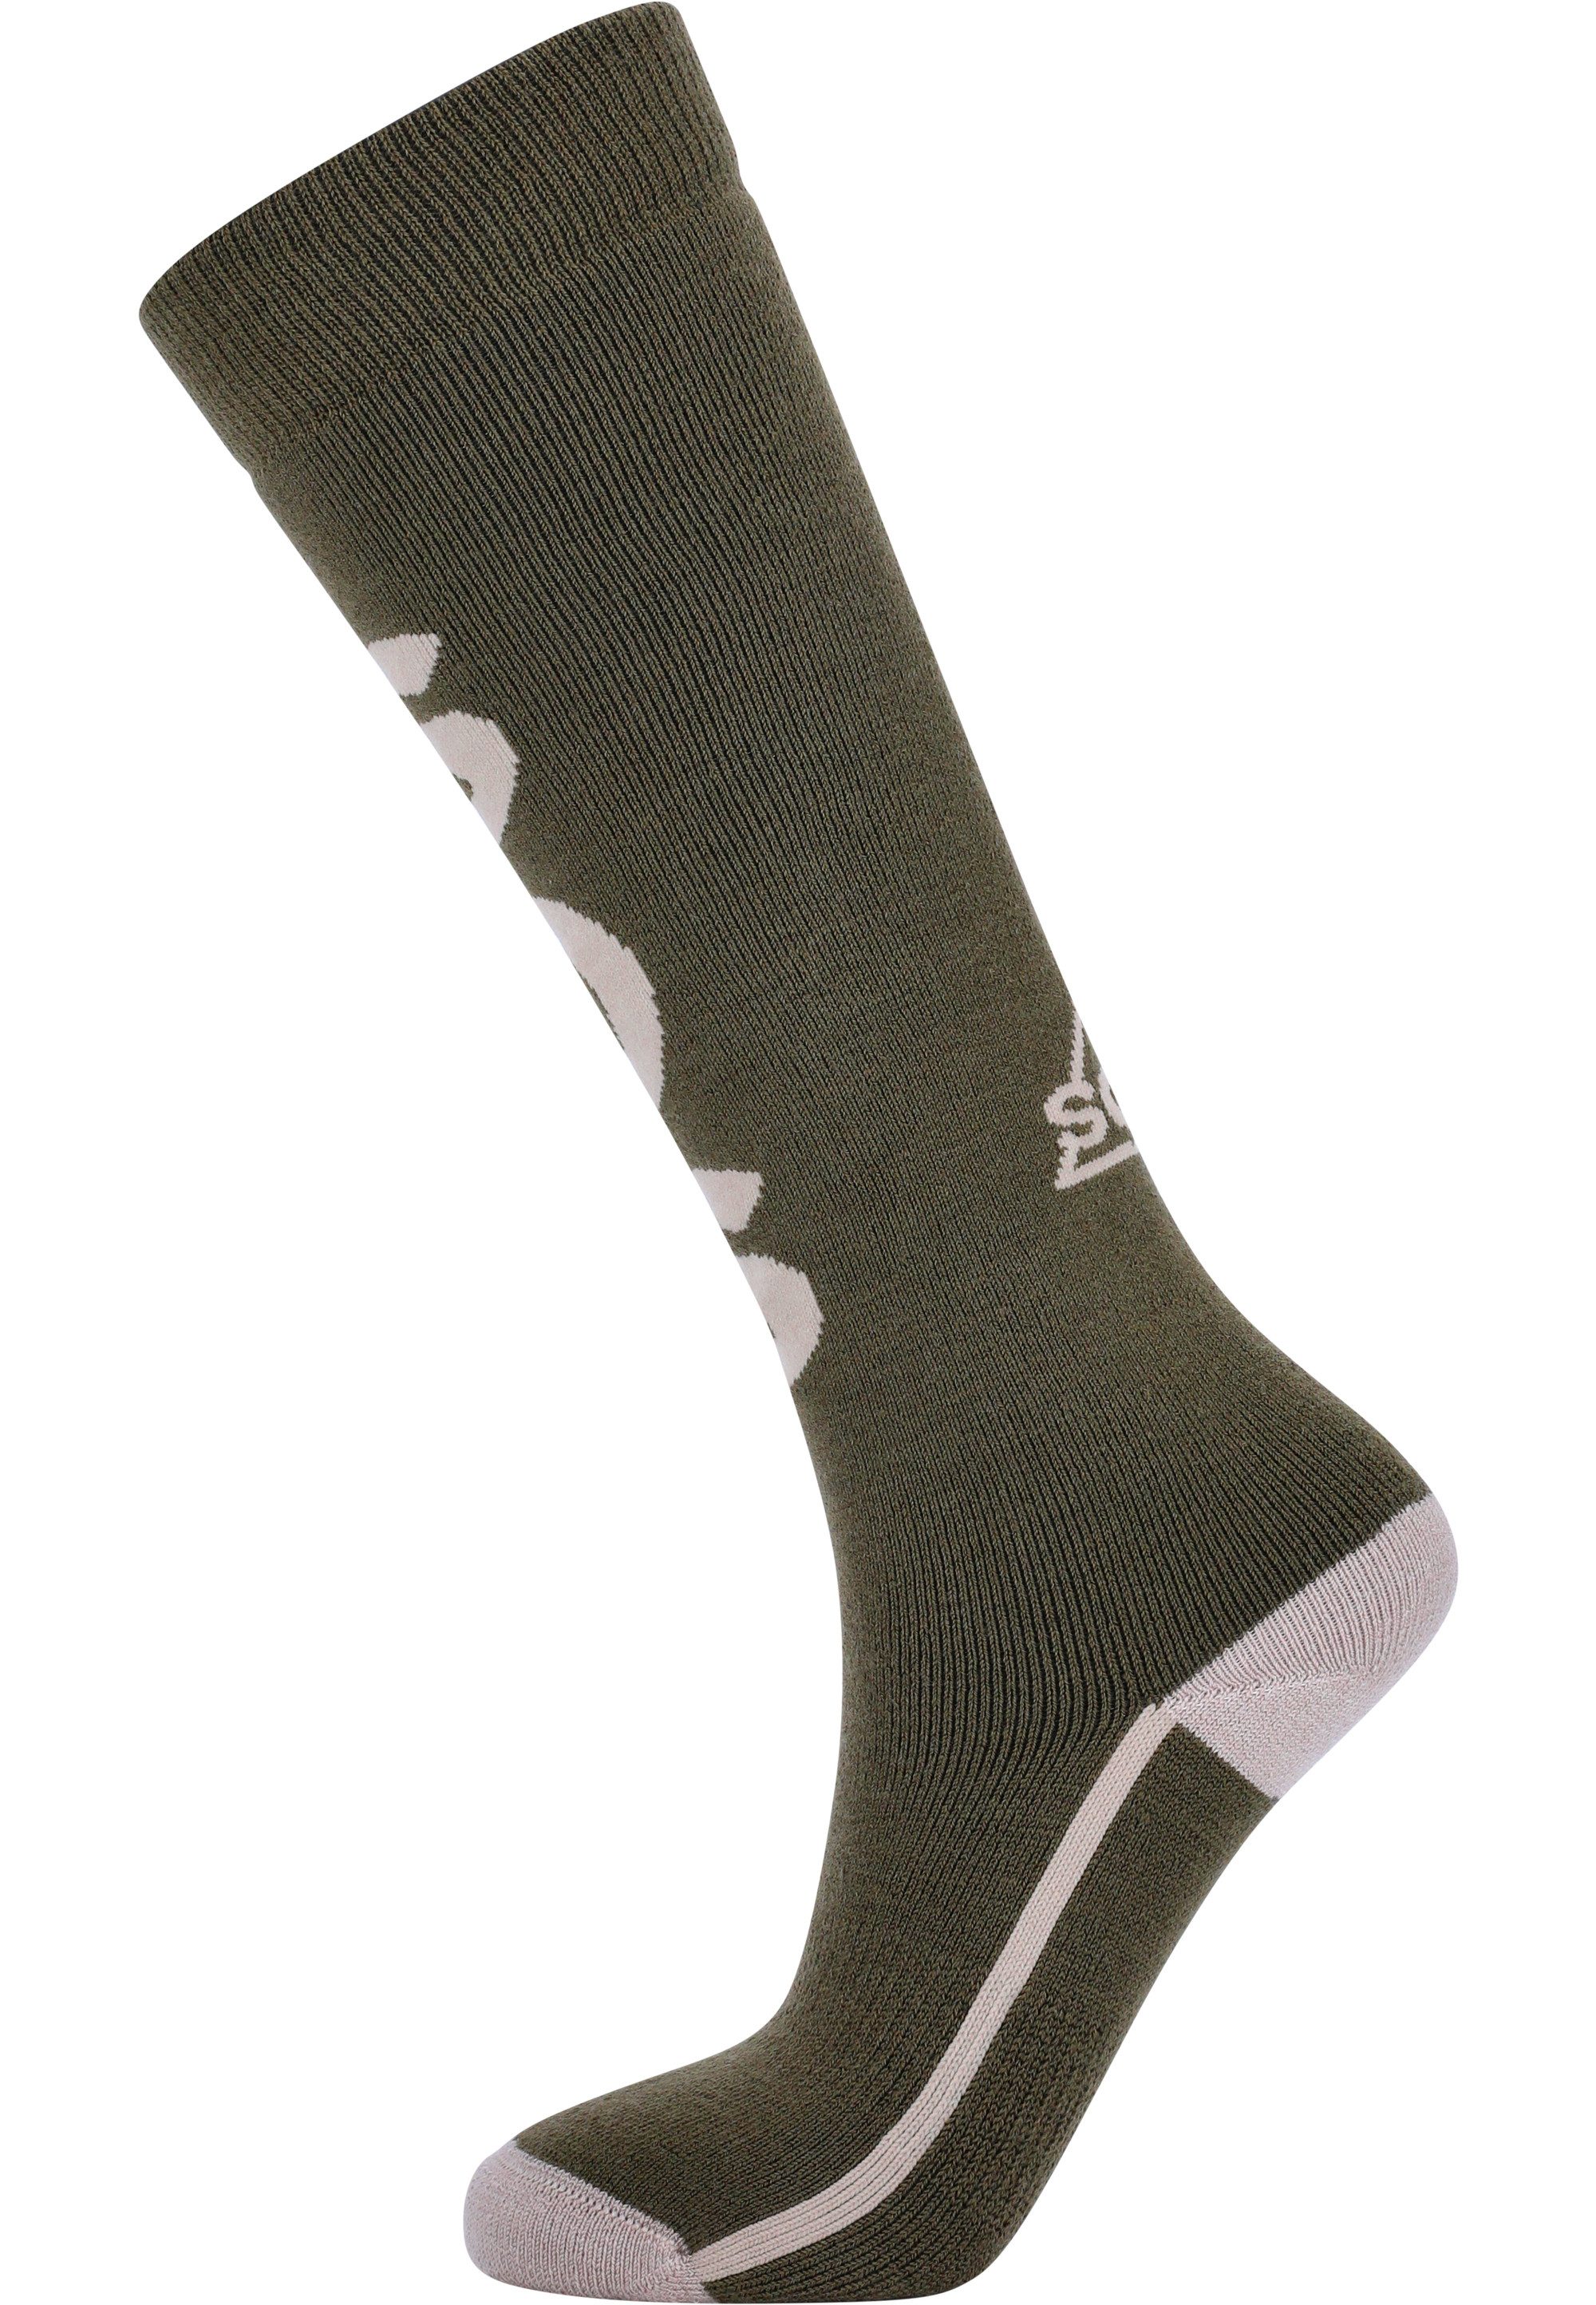 SOS Socken Portillio mit besonders weicher Merinowolle